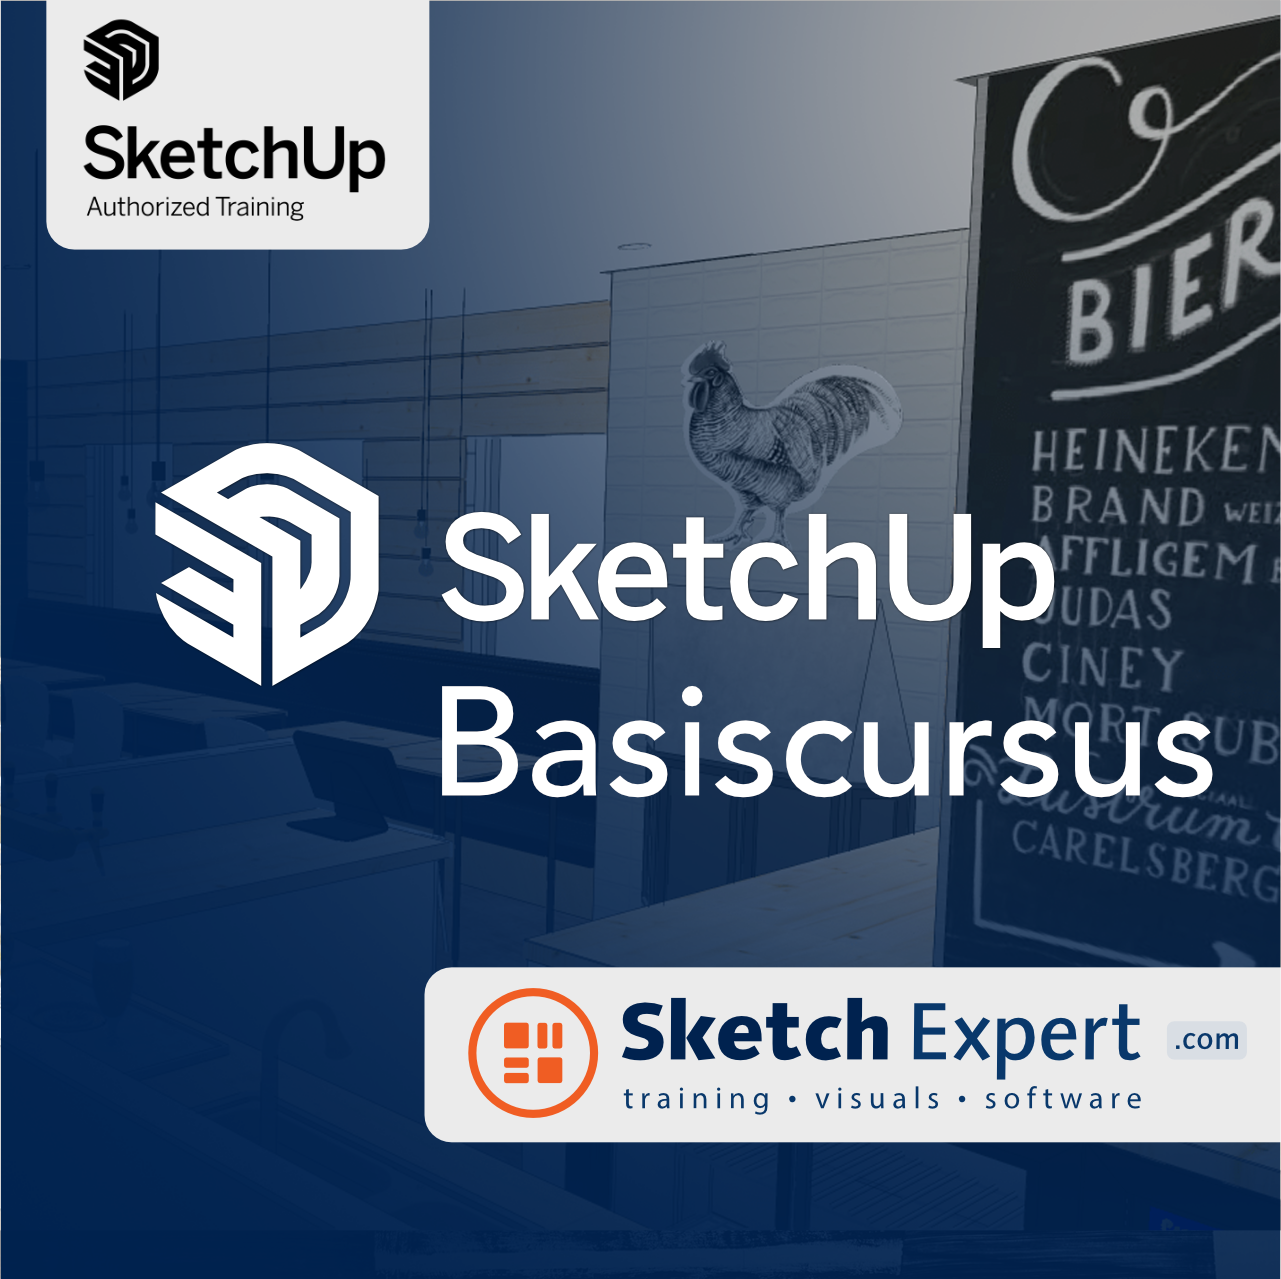 SketchExpert | Dé SketchUp Expert van Nederland